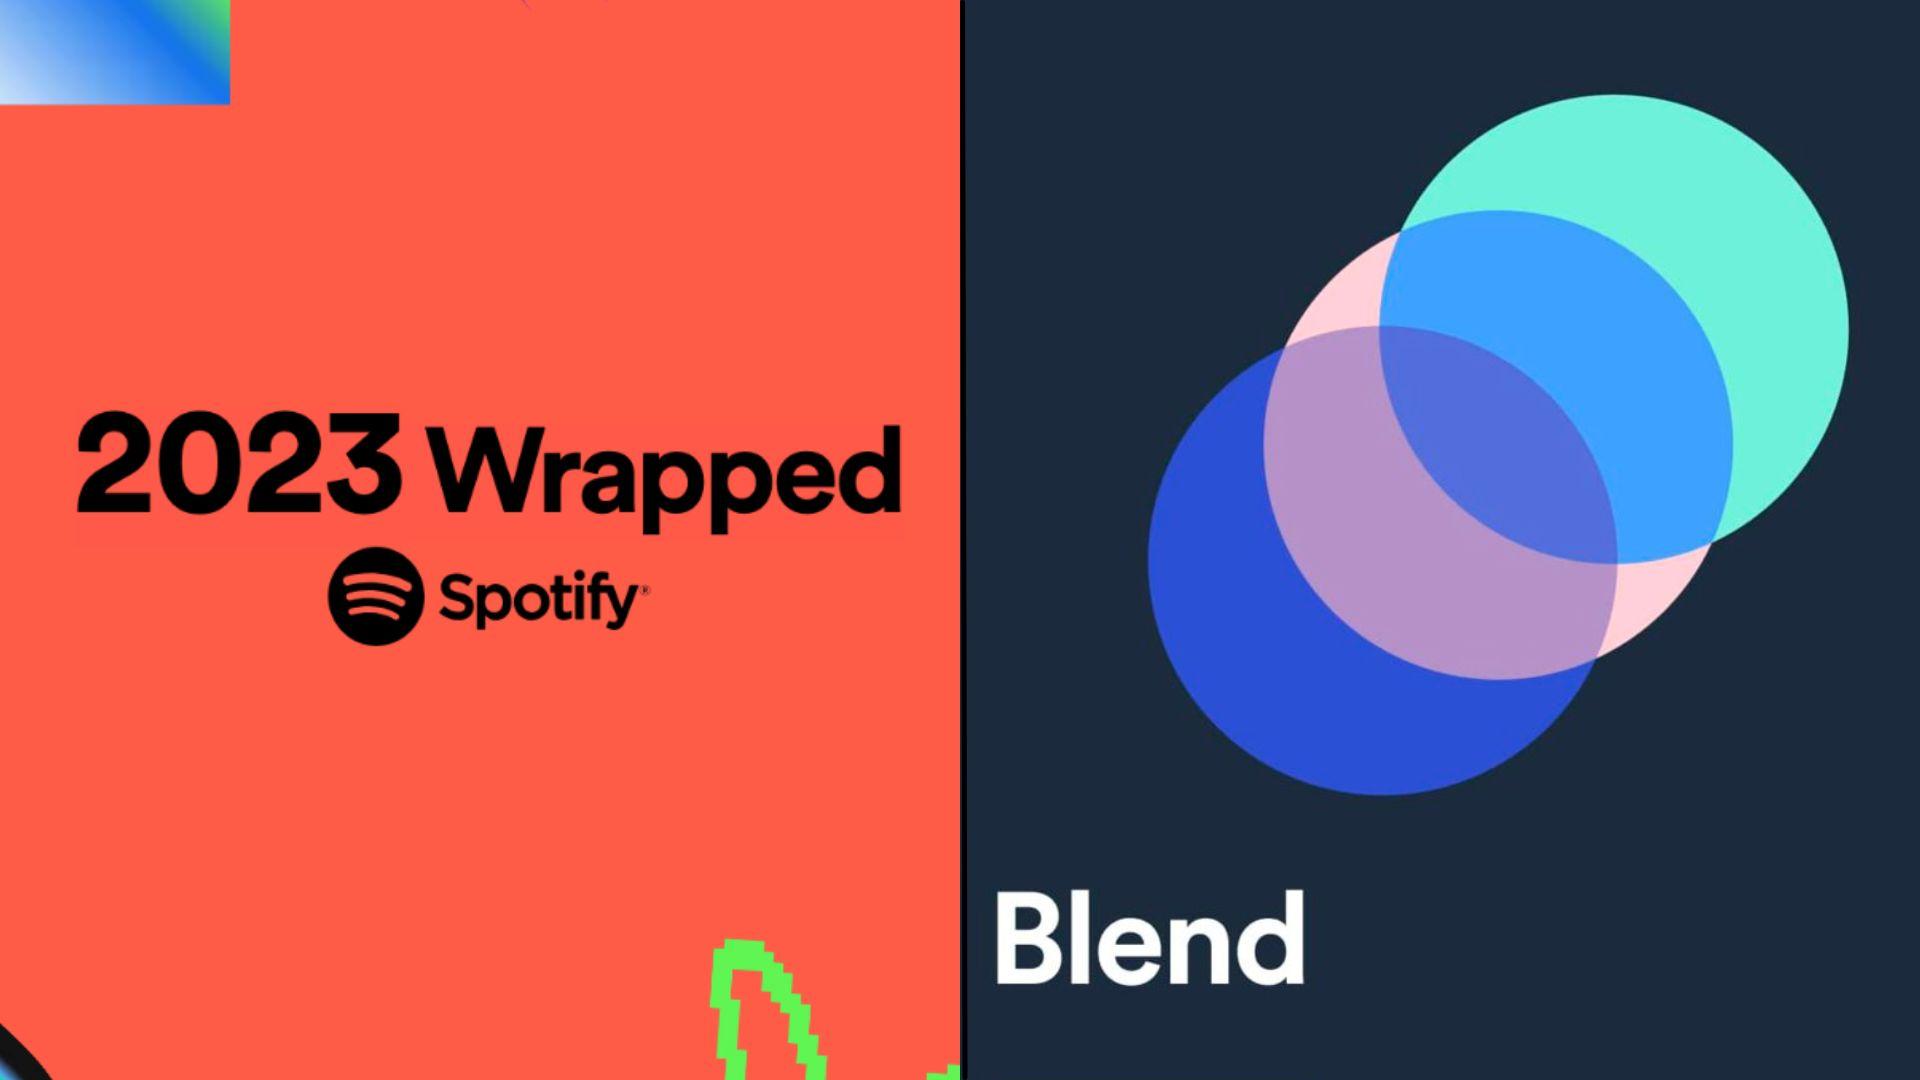 Spotify Wrapped logo next to Blend logo